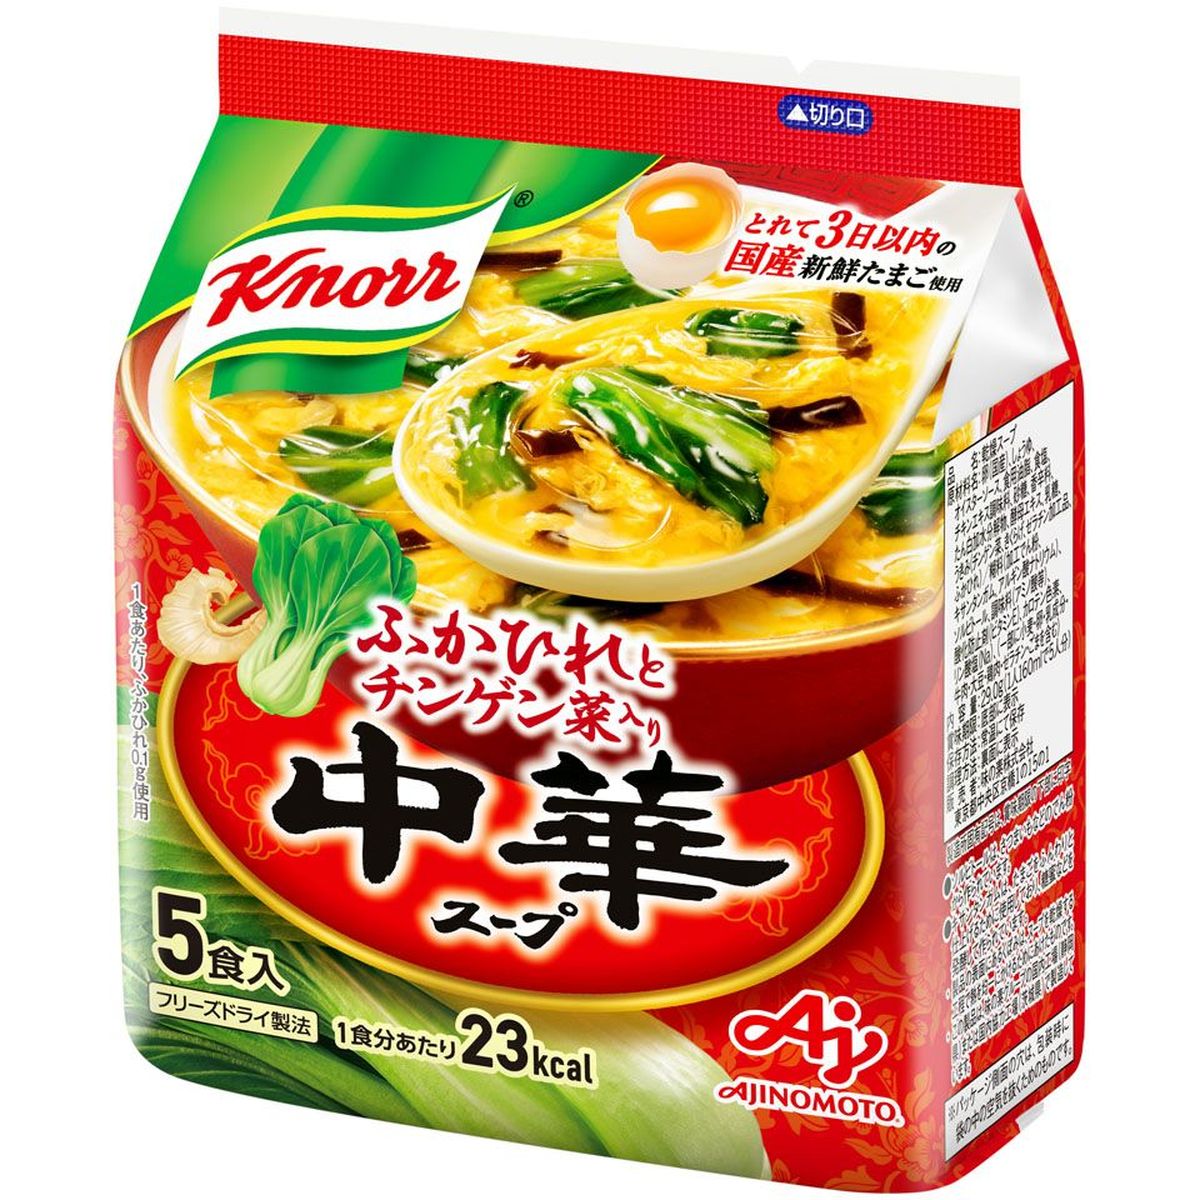 クノール  中華スープ  フリーズドライタイプ  5食袋  30g  x  10